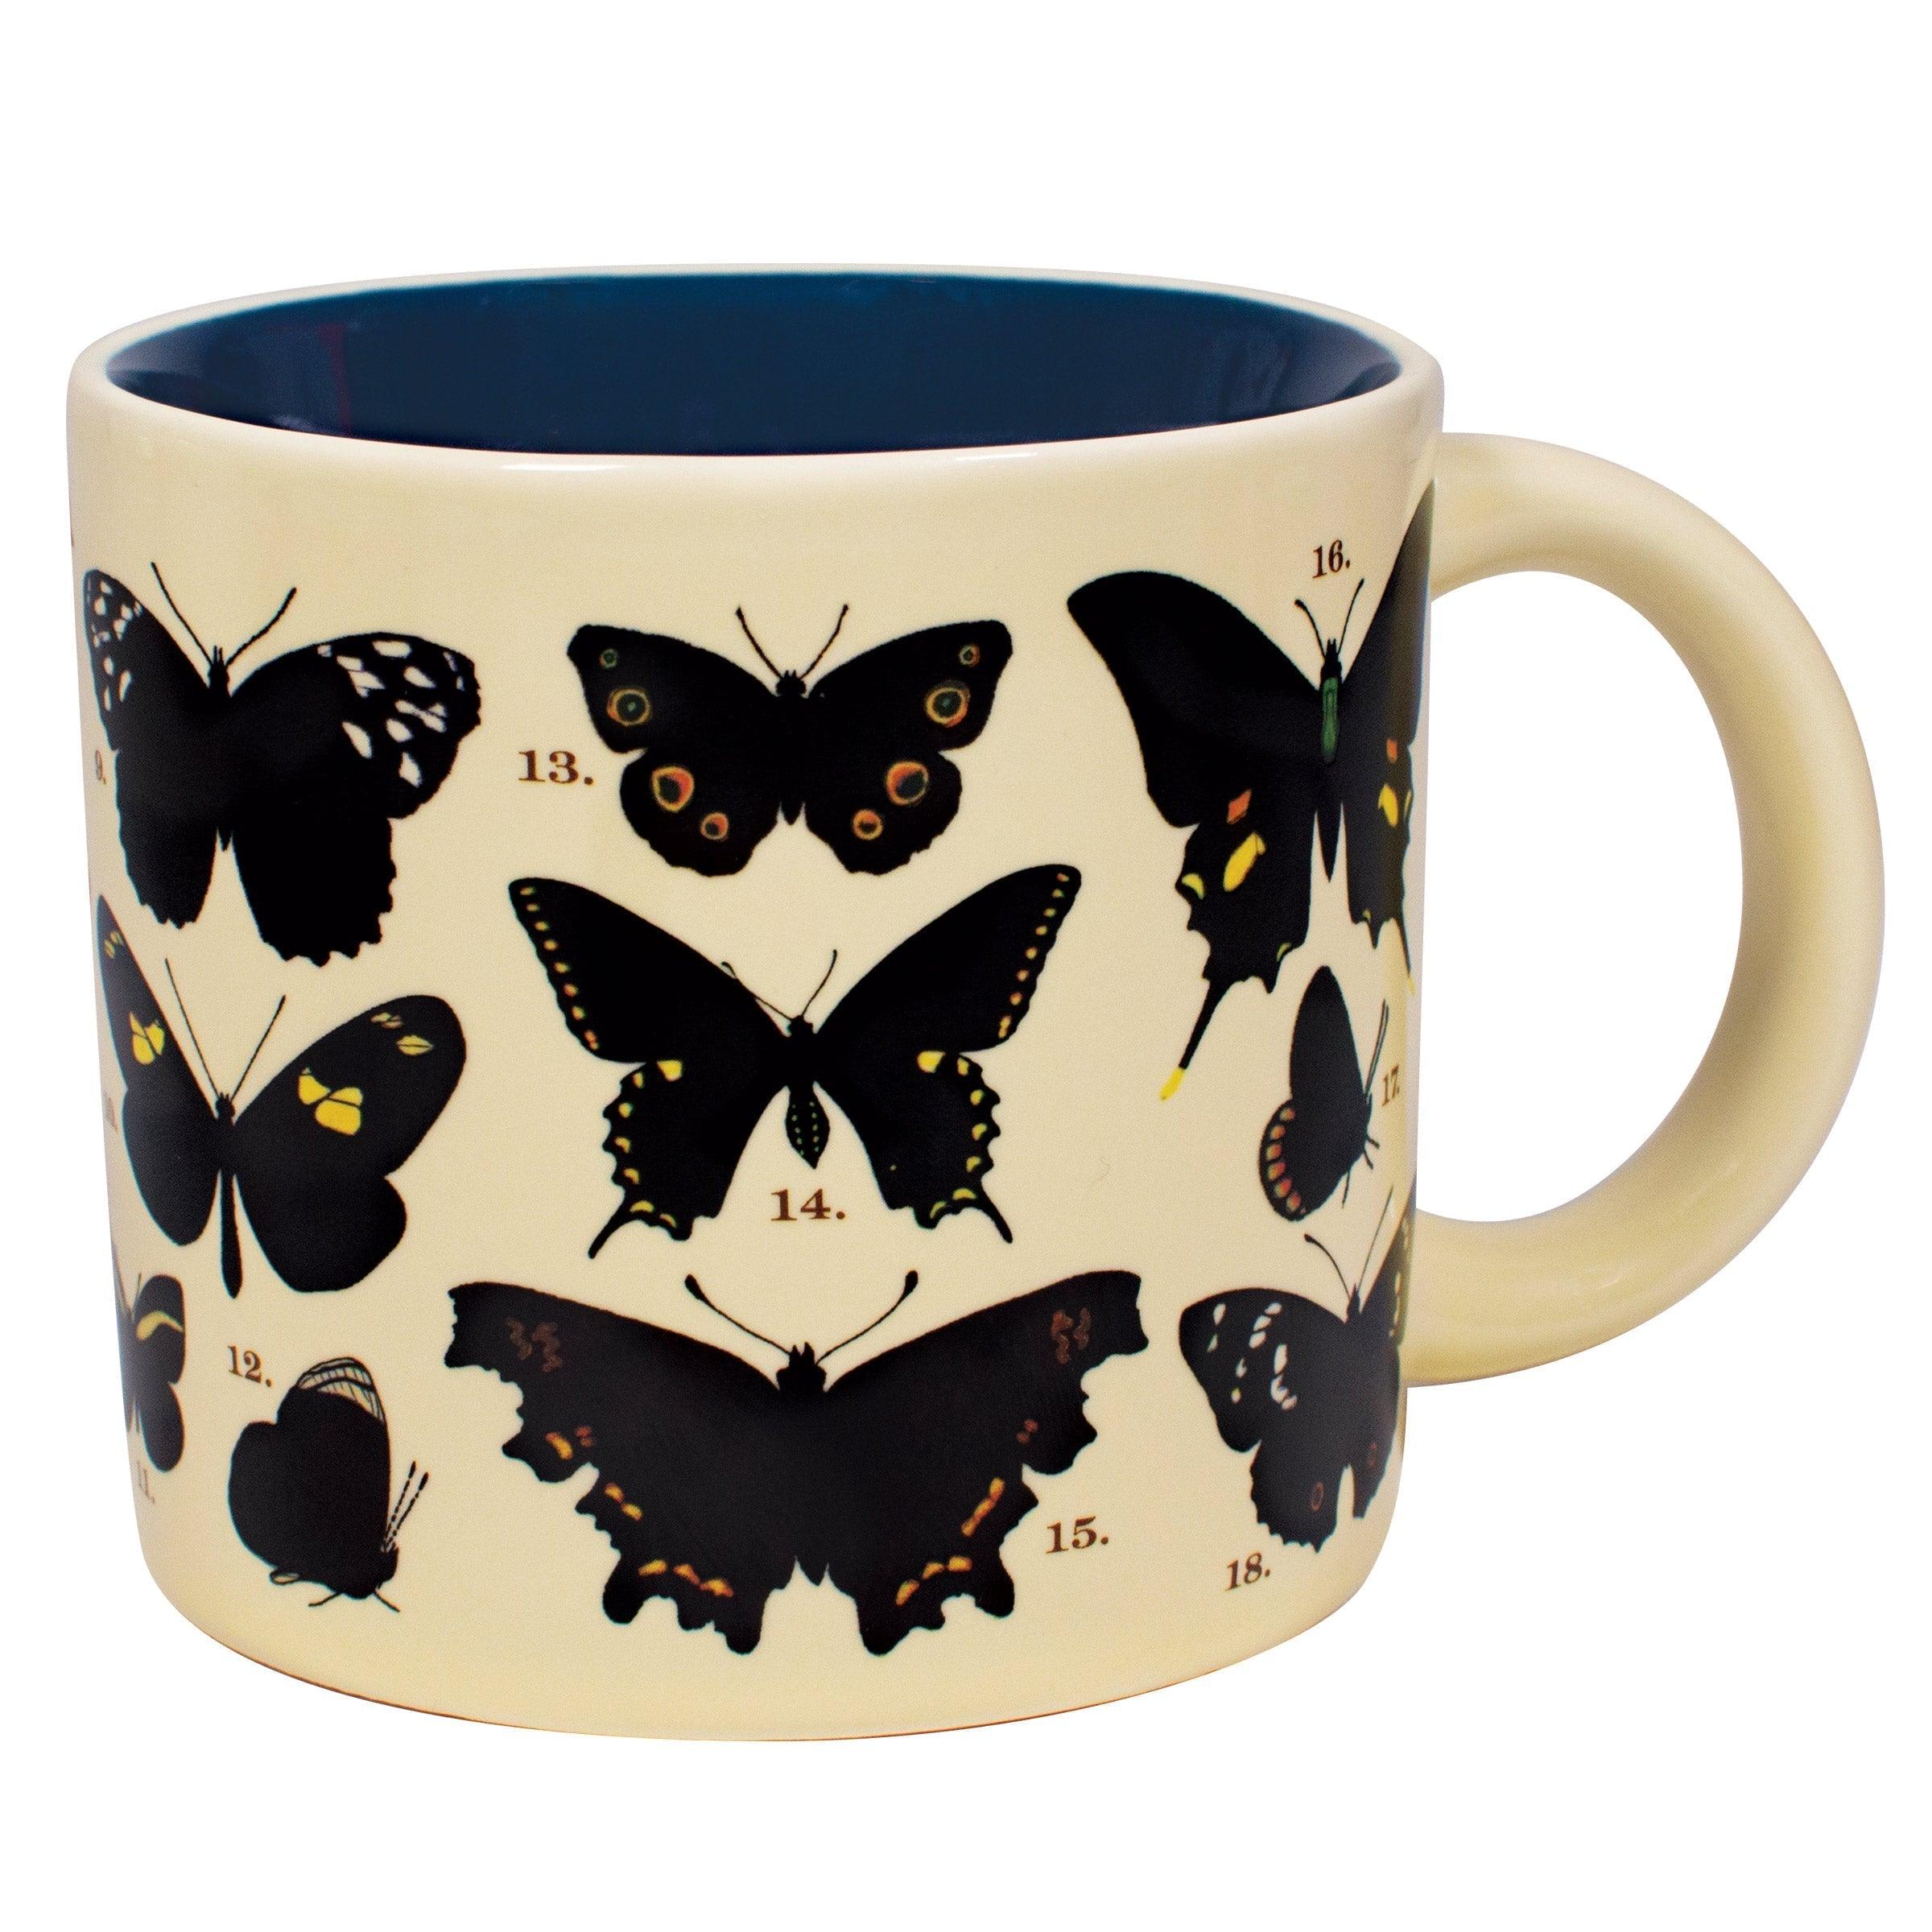 https://philosophersguild.com/cdn/shop/products/butterflies-heat-changing-mug-2.jpg?v=1671309966